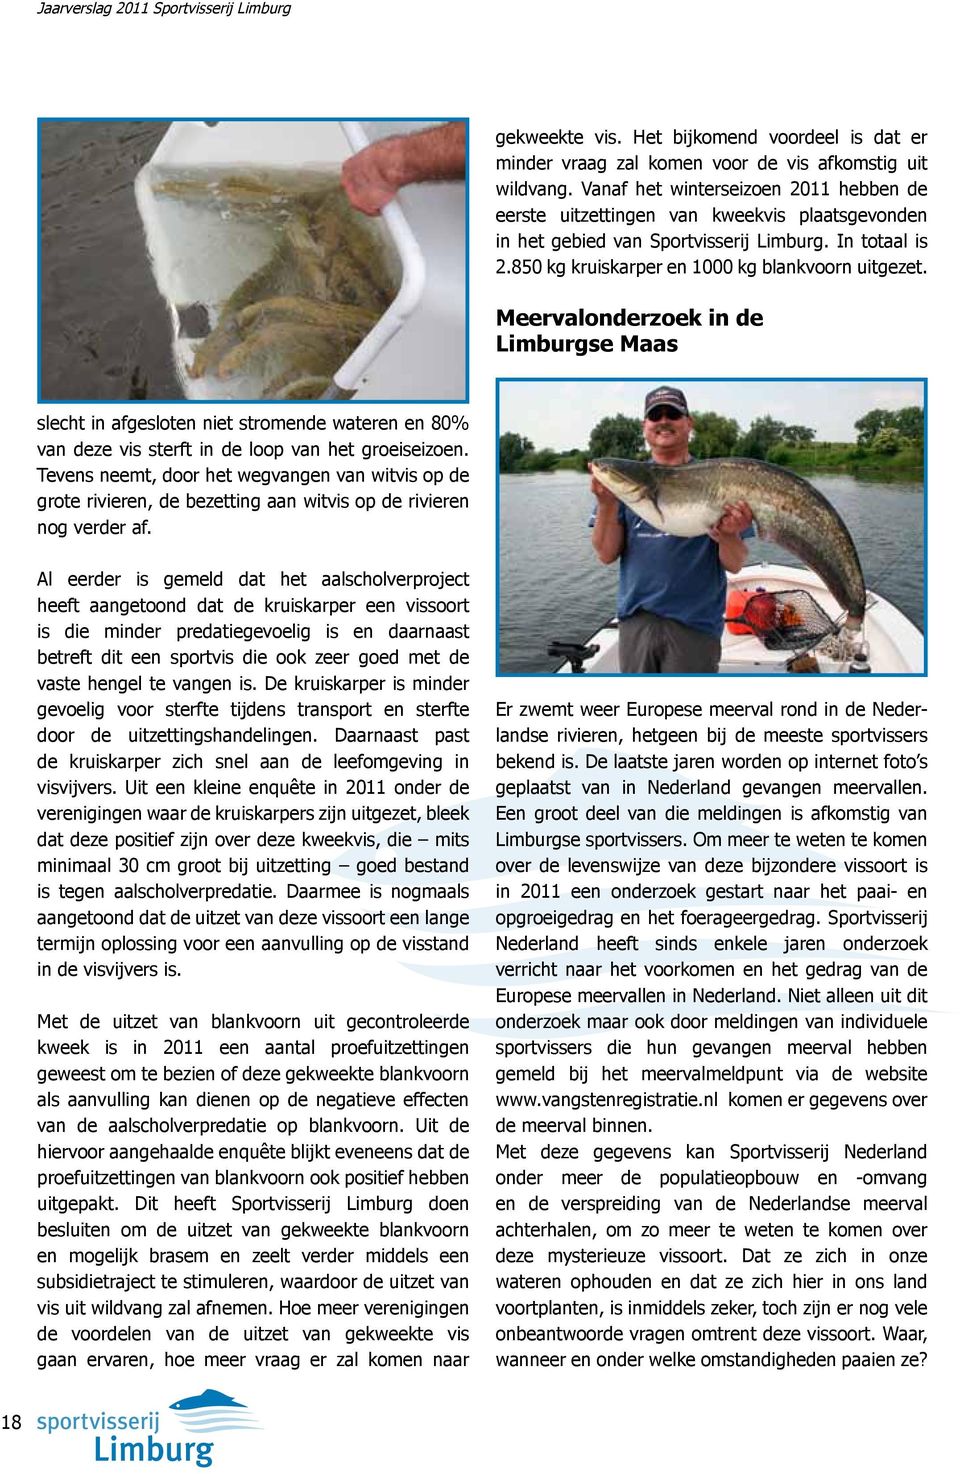 Meervalonderzoek in de Limburgse Maas slecht in afgesloten niet stromende wateren en 80% van deze vis sterft in de loop van het groeiseizoen.